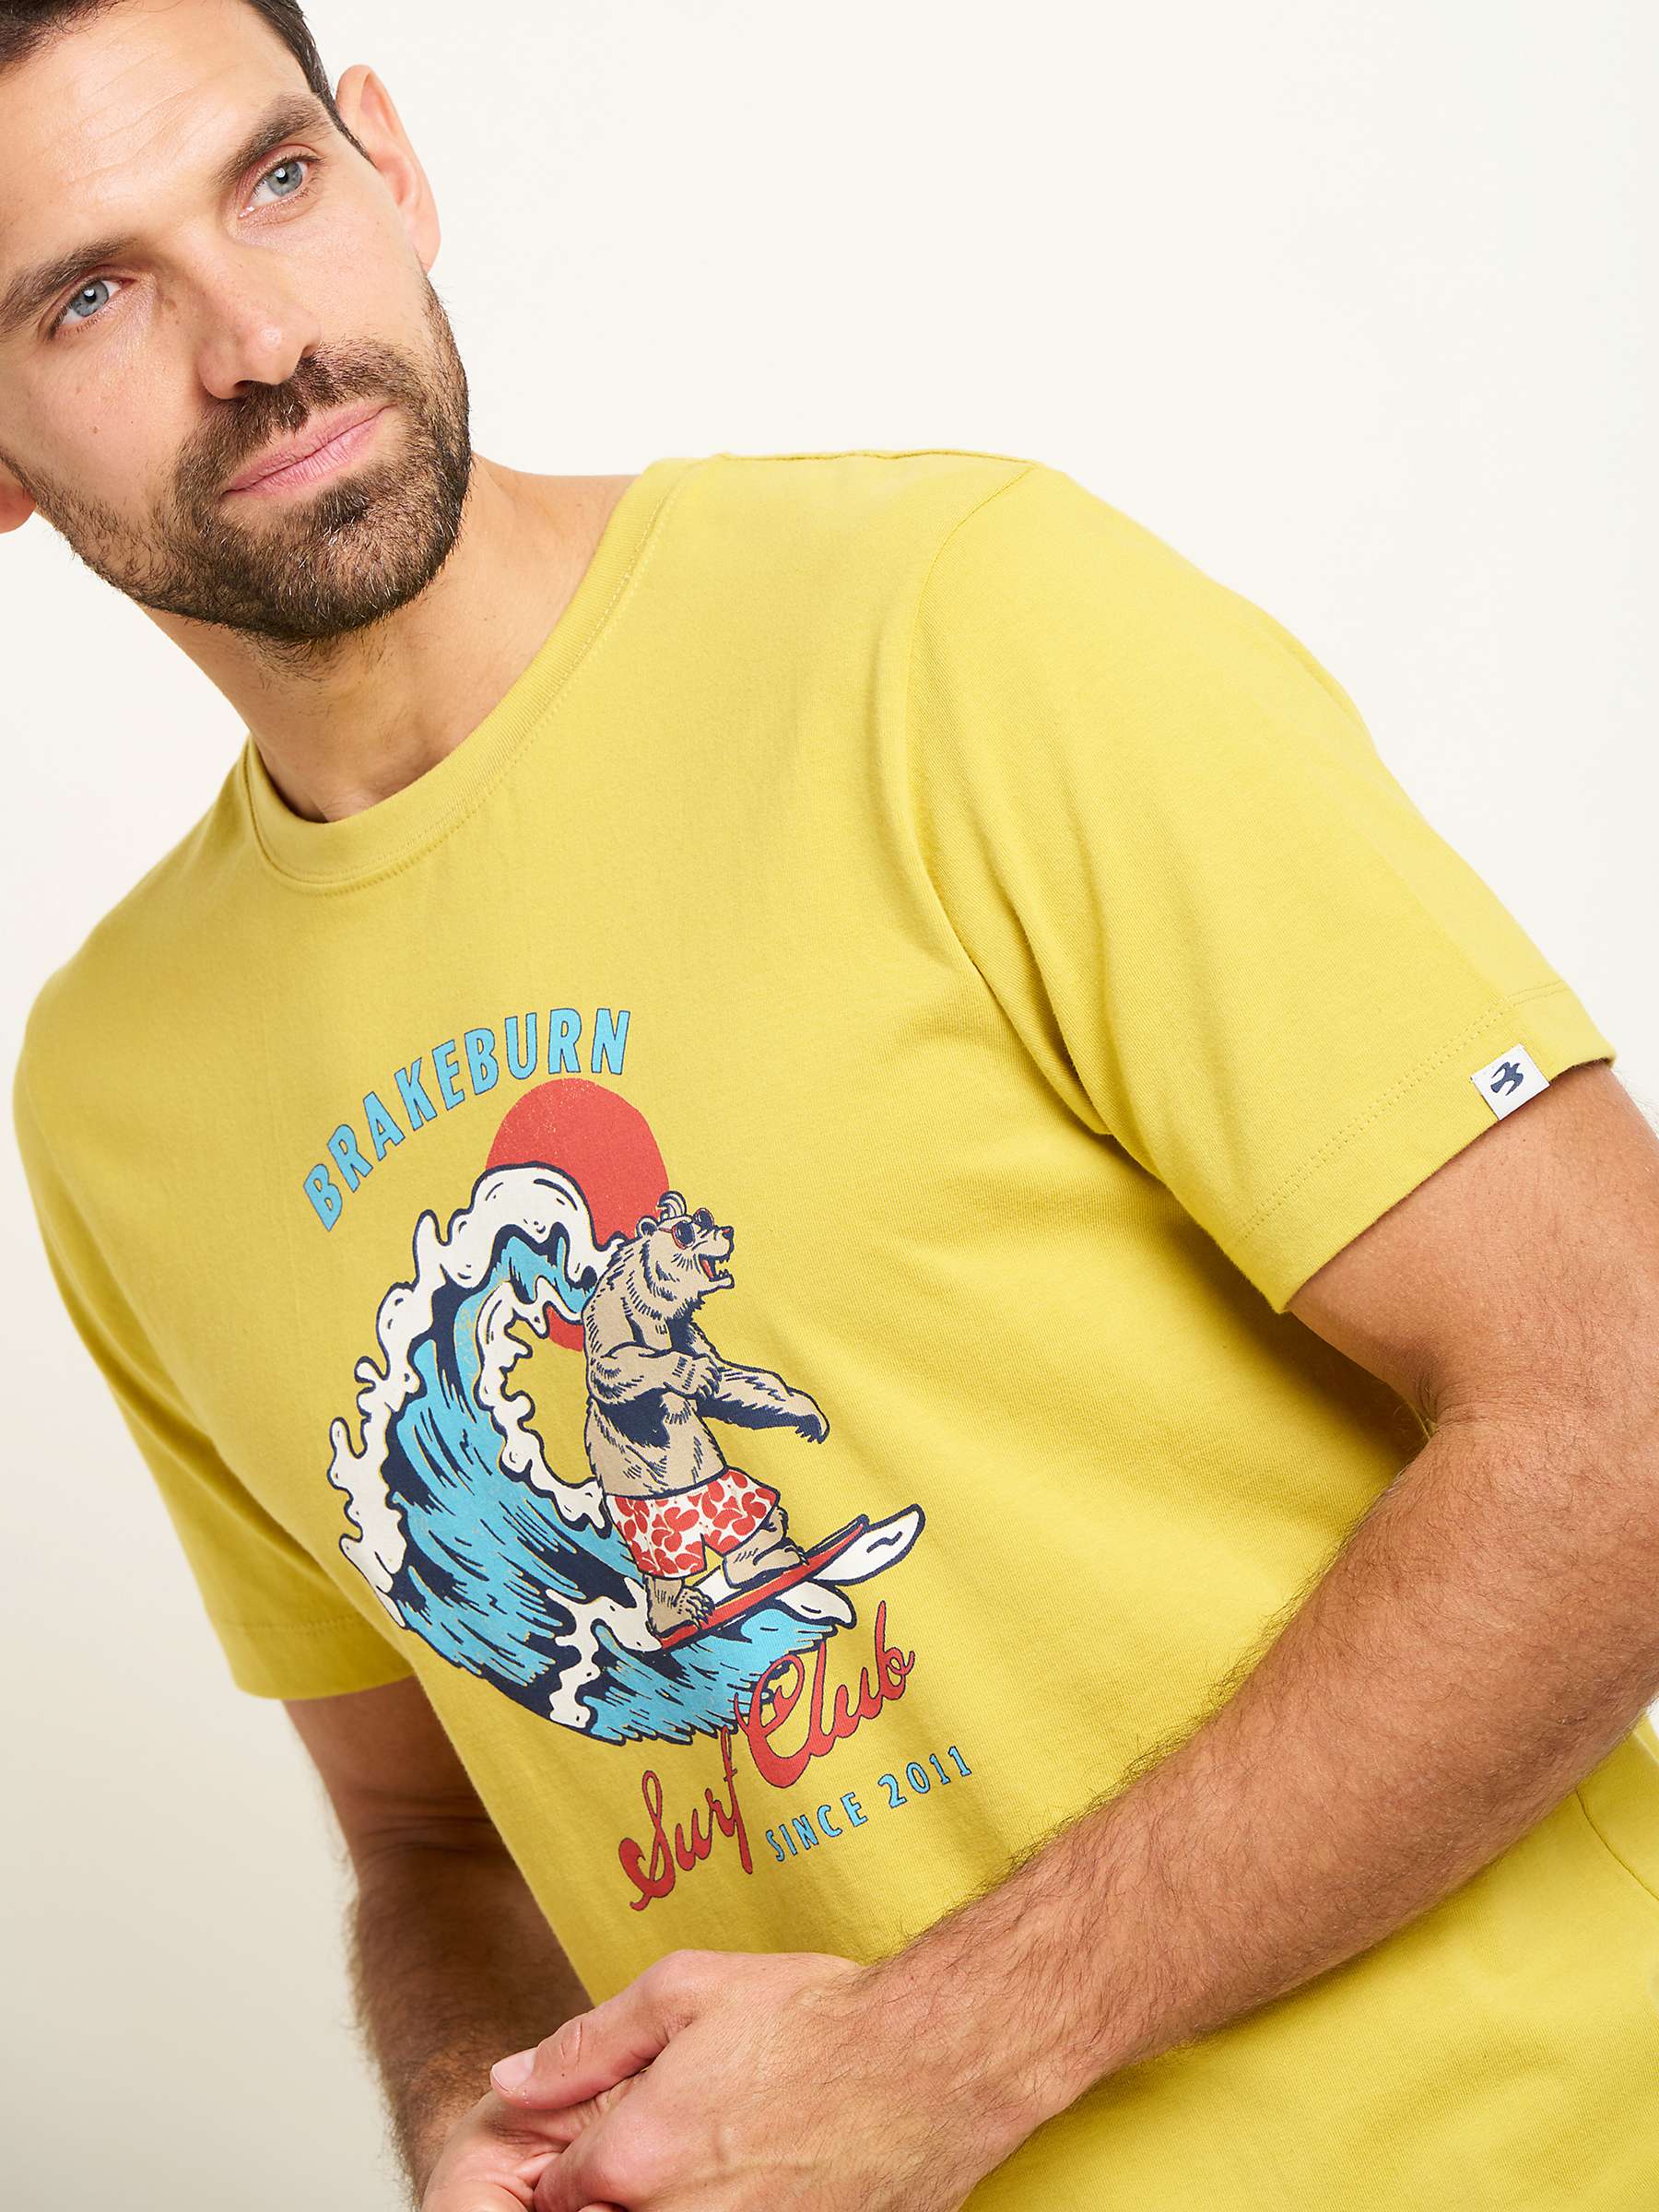 Buy Brakeburn Bear Cotton T-Shirt, Yellow Online at johnlewis.com